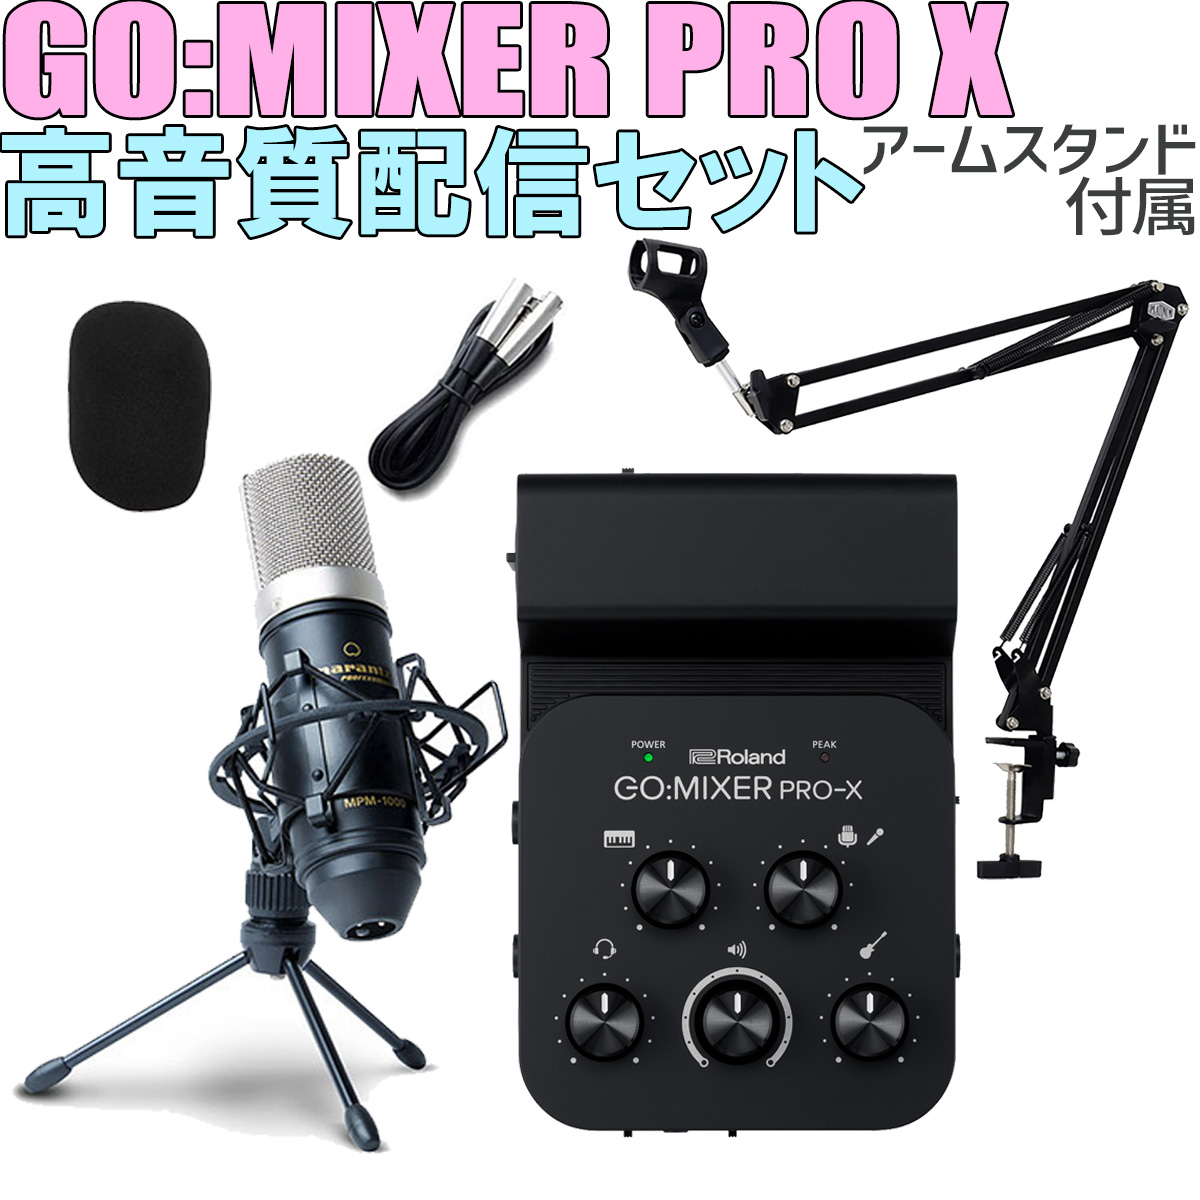 Roland GO:MIXER PRO-X MPM-1000J 高音質配信セット アームスタンド付属 スマホ用インターフェース 【ローランド】